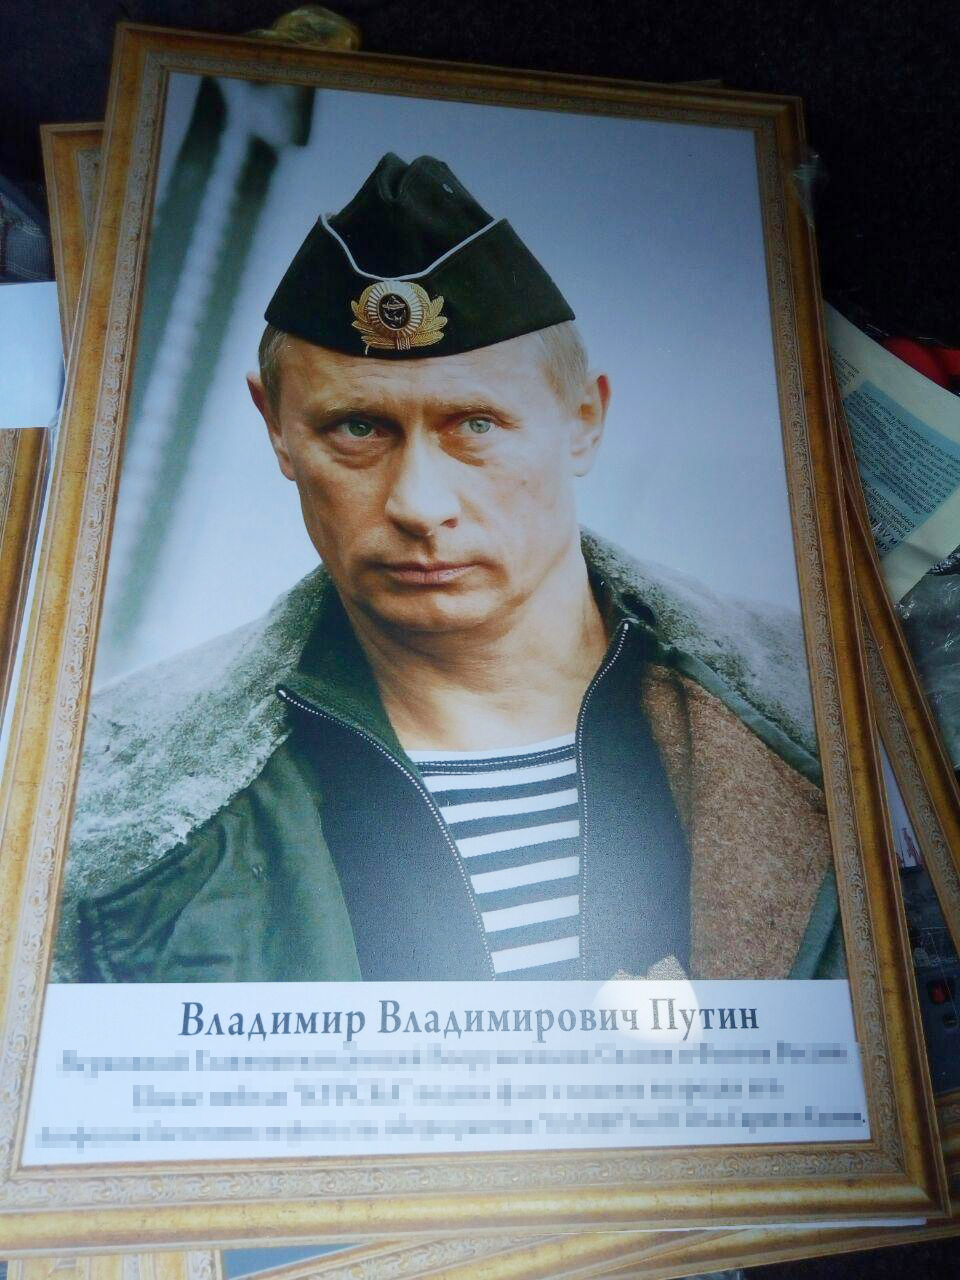 Украинец вез из Молдовы картины с Путиным и советско-российскую символику - фото